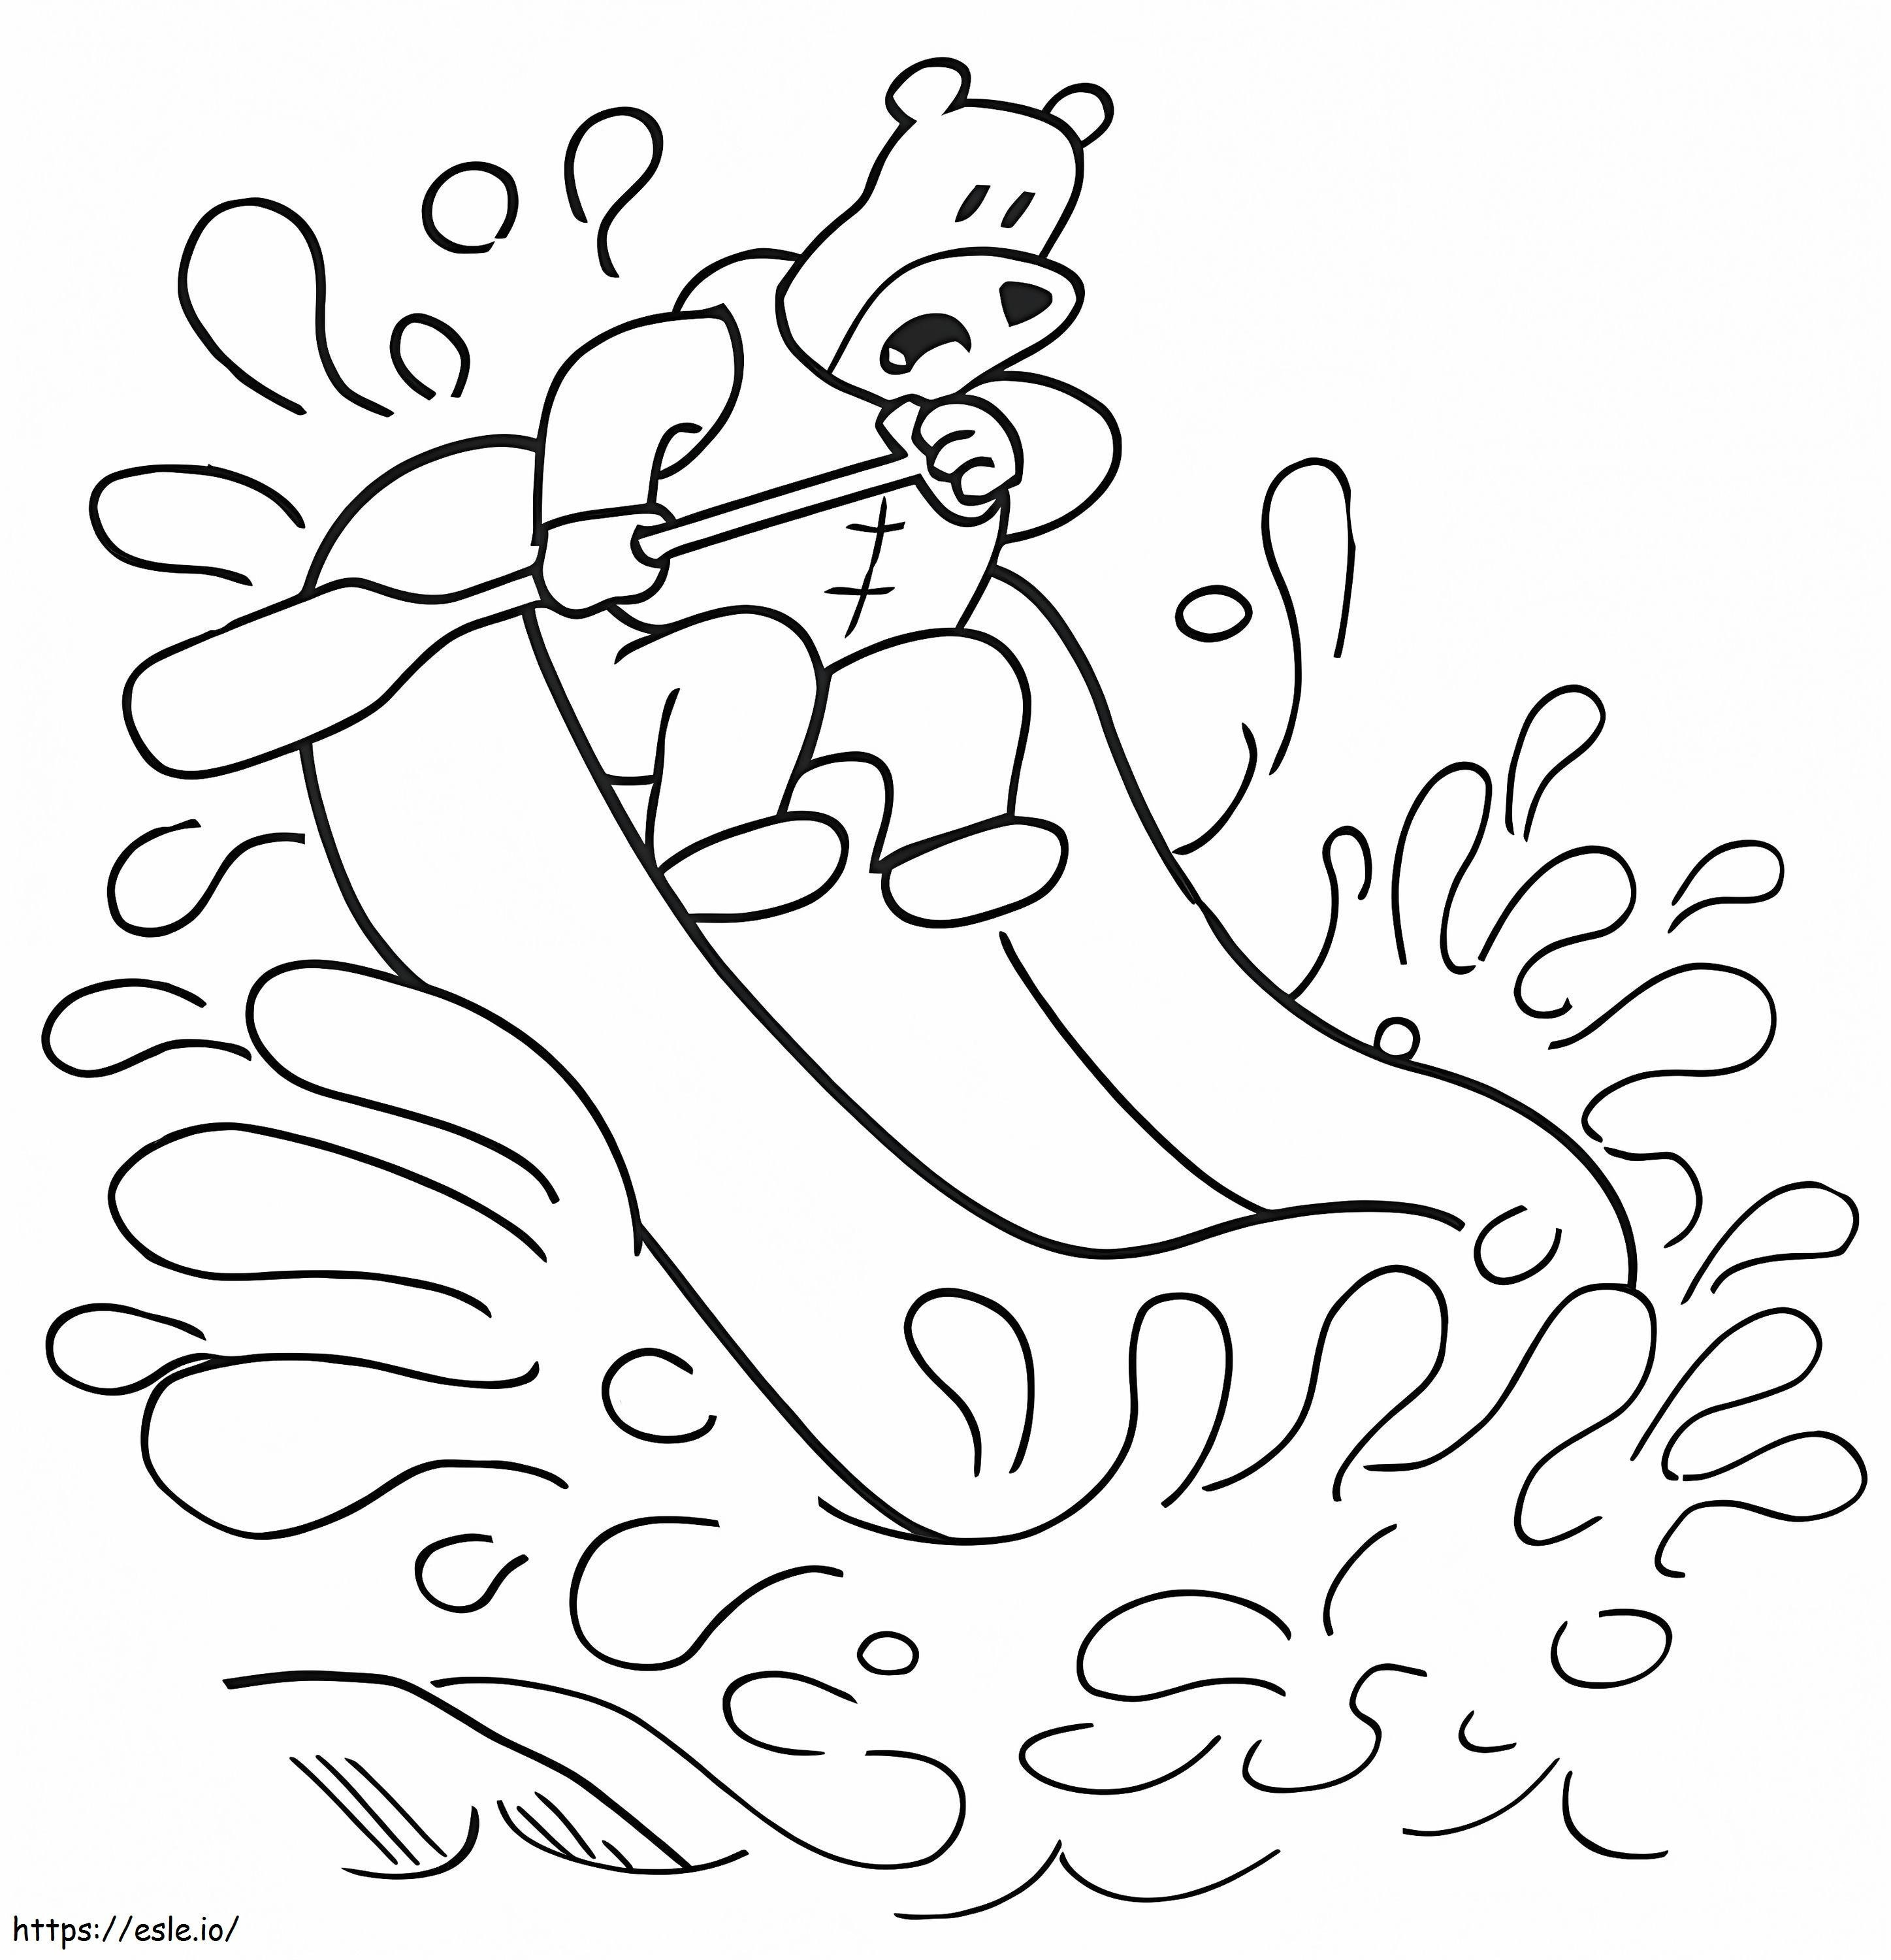 Ein Bär auf einem Floß ausmalbilder